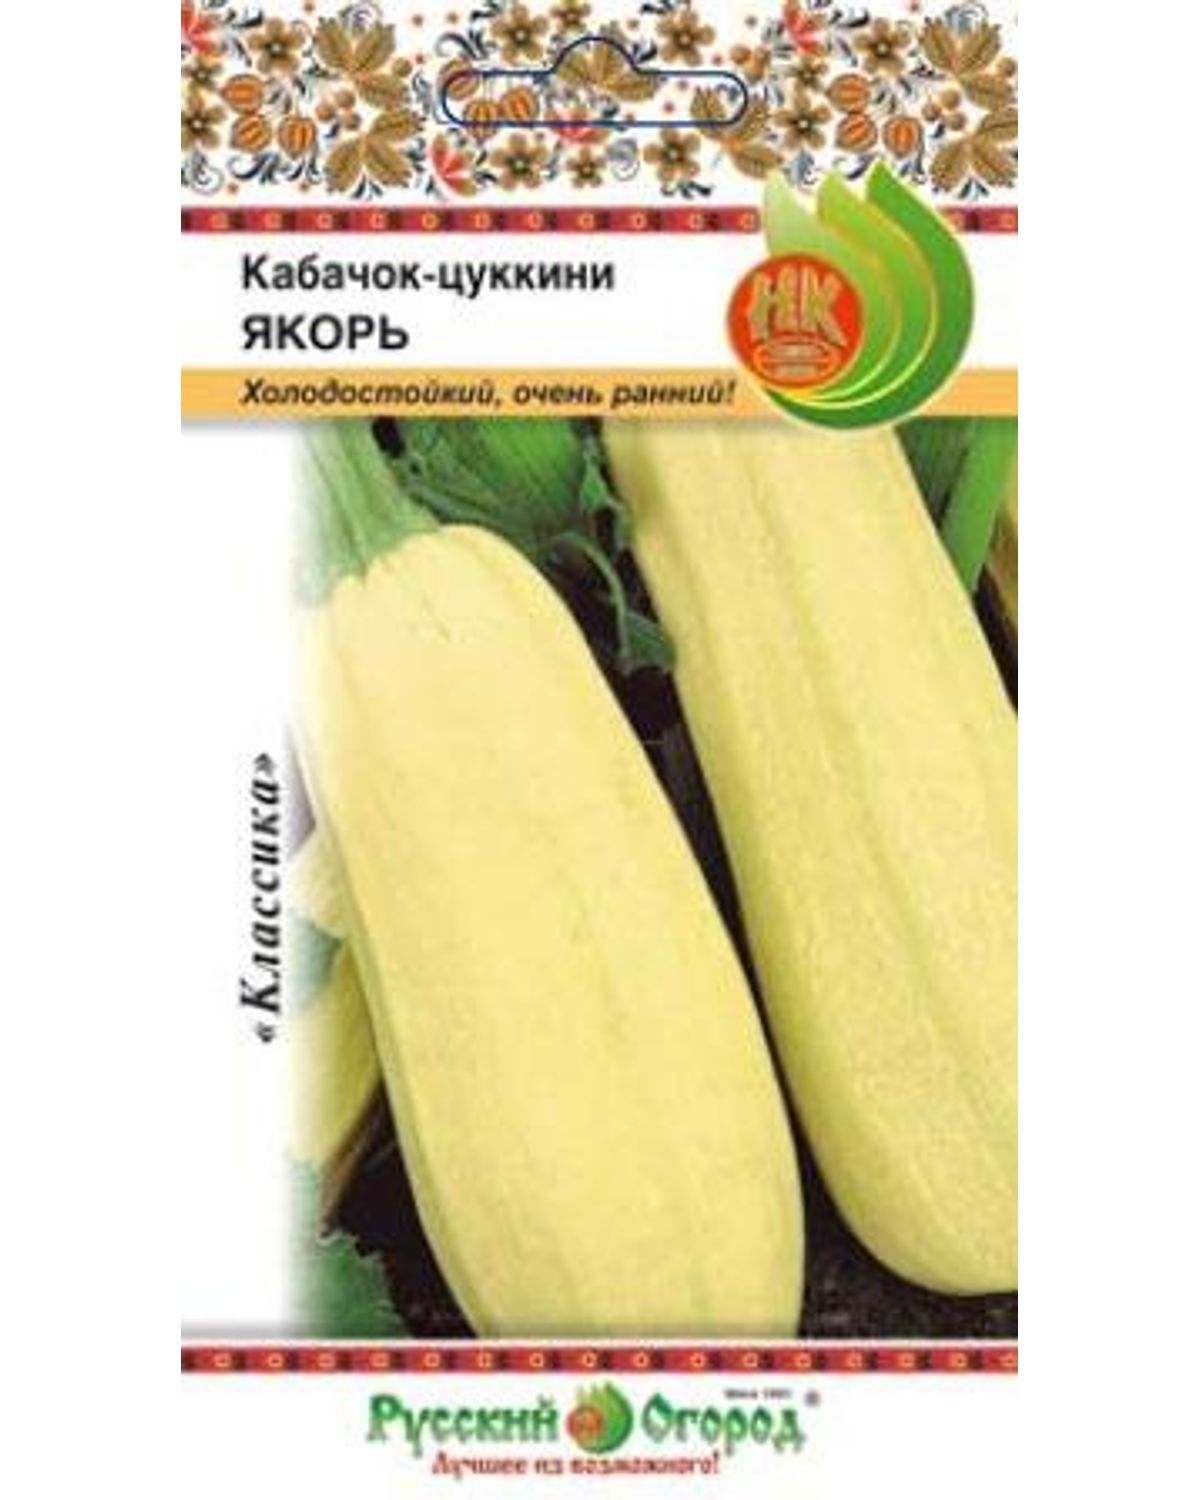 Семена кабачок Русский огород Якорь 304014 1 уп. - отзывы покупателей наМегамаркет